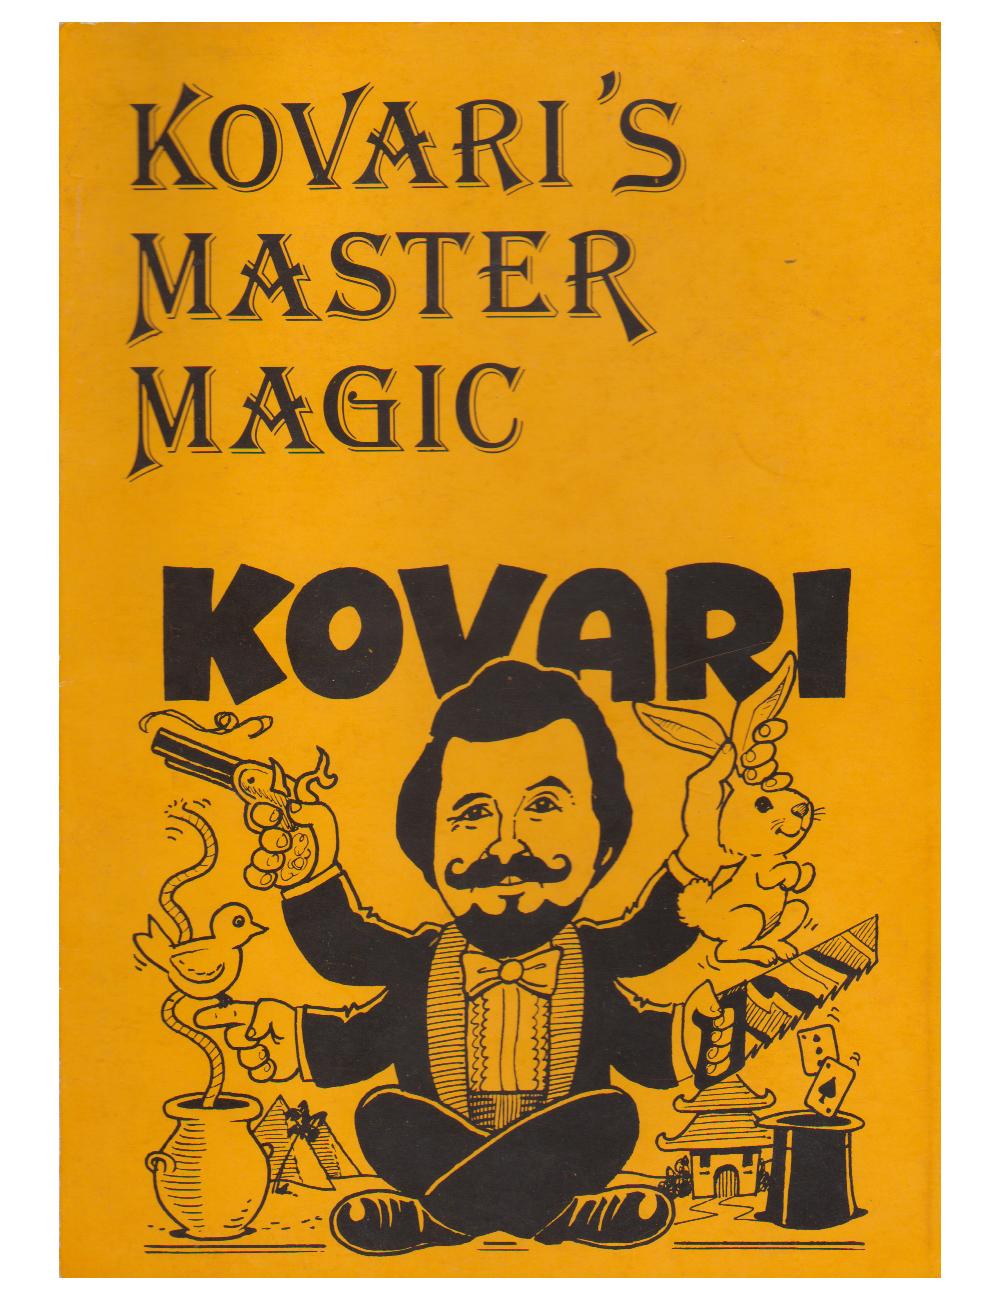 KOVARI'S MASTER MAGIC